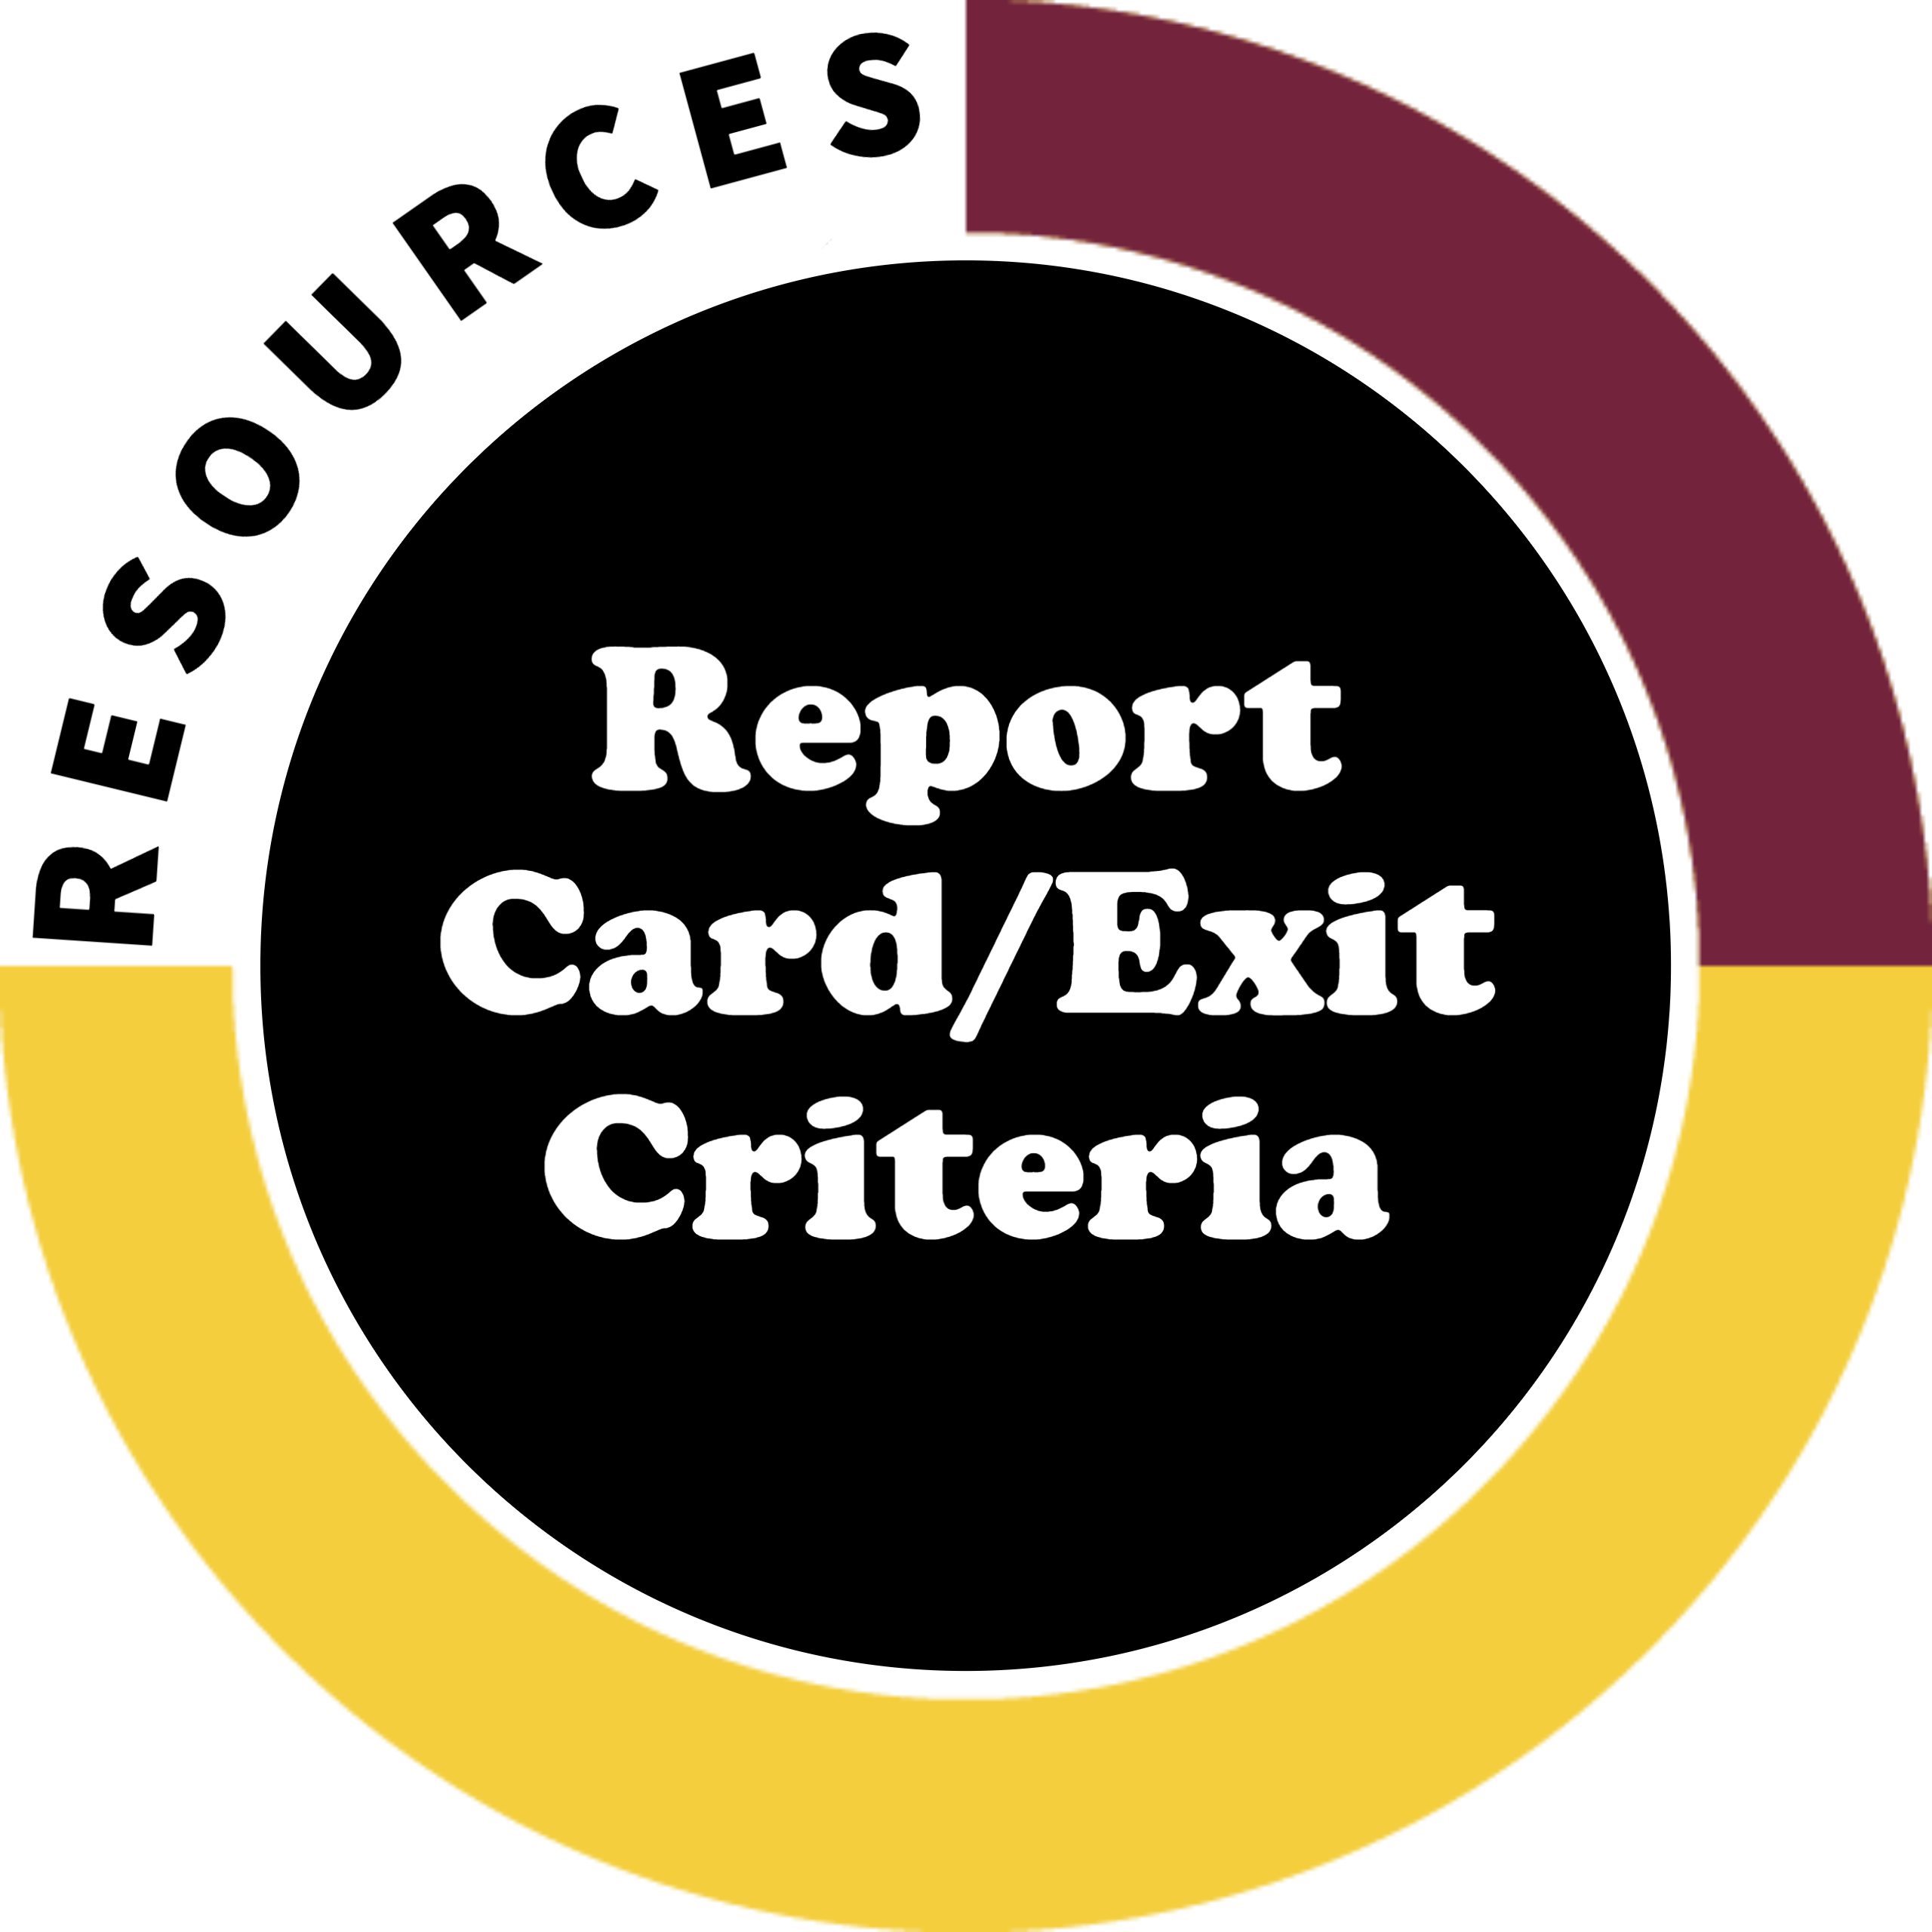 Report Card/Exit Criteria